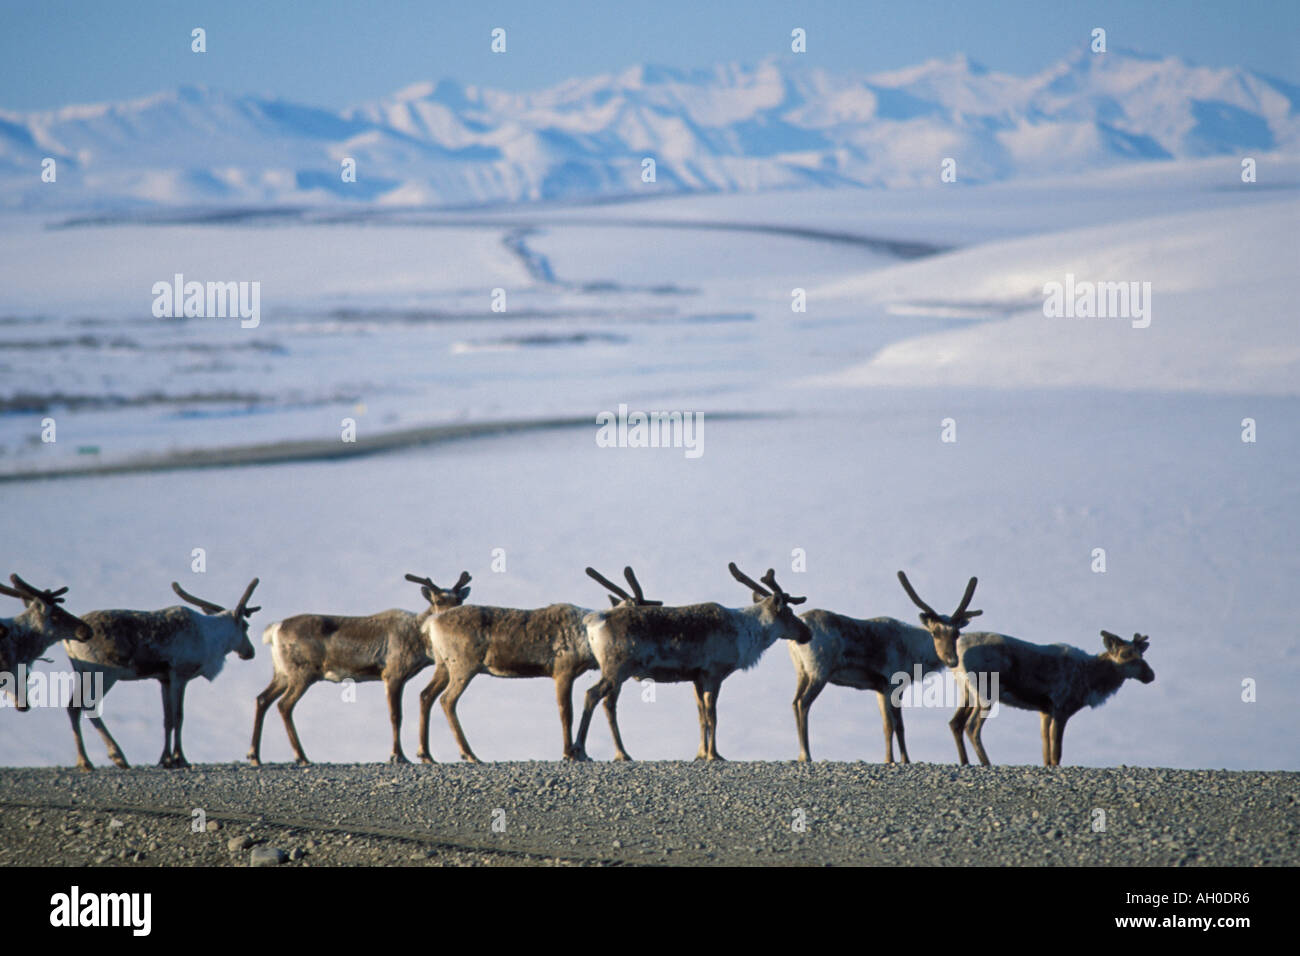 Le caribou de la toundra Rangifer tarandus troupeau le long de la route dans l'Arctique de l'Alaska North Slope Banque D'Images